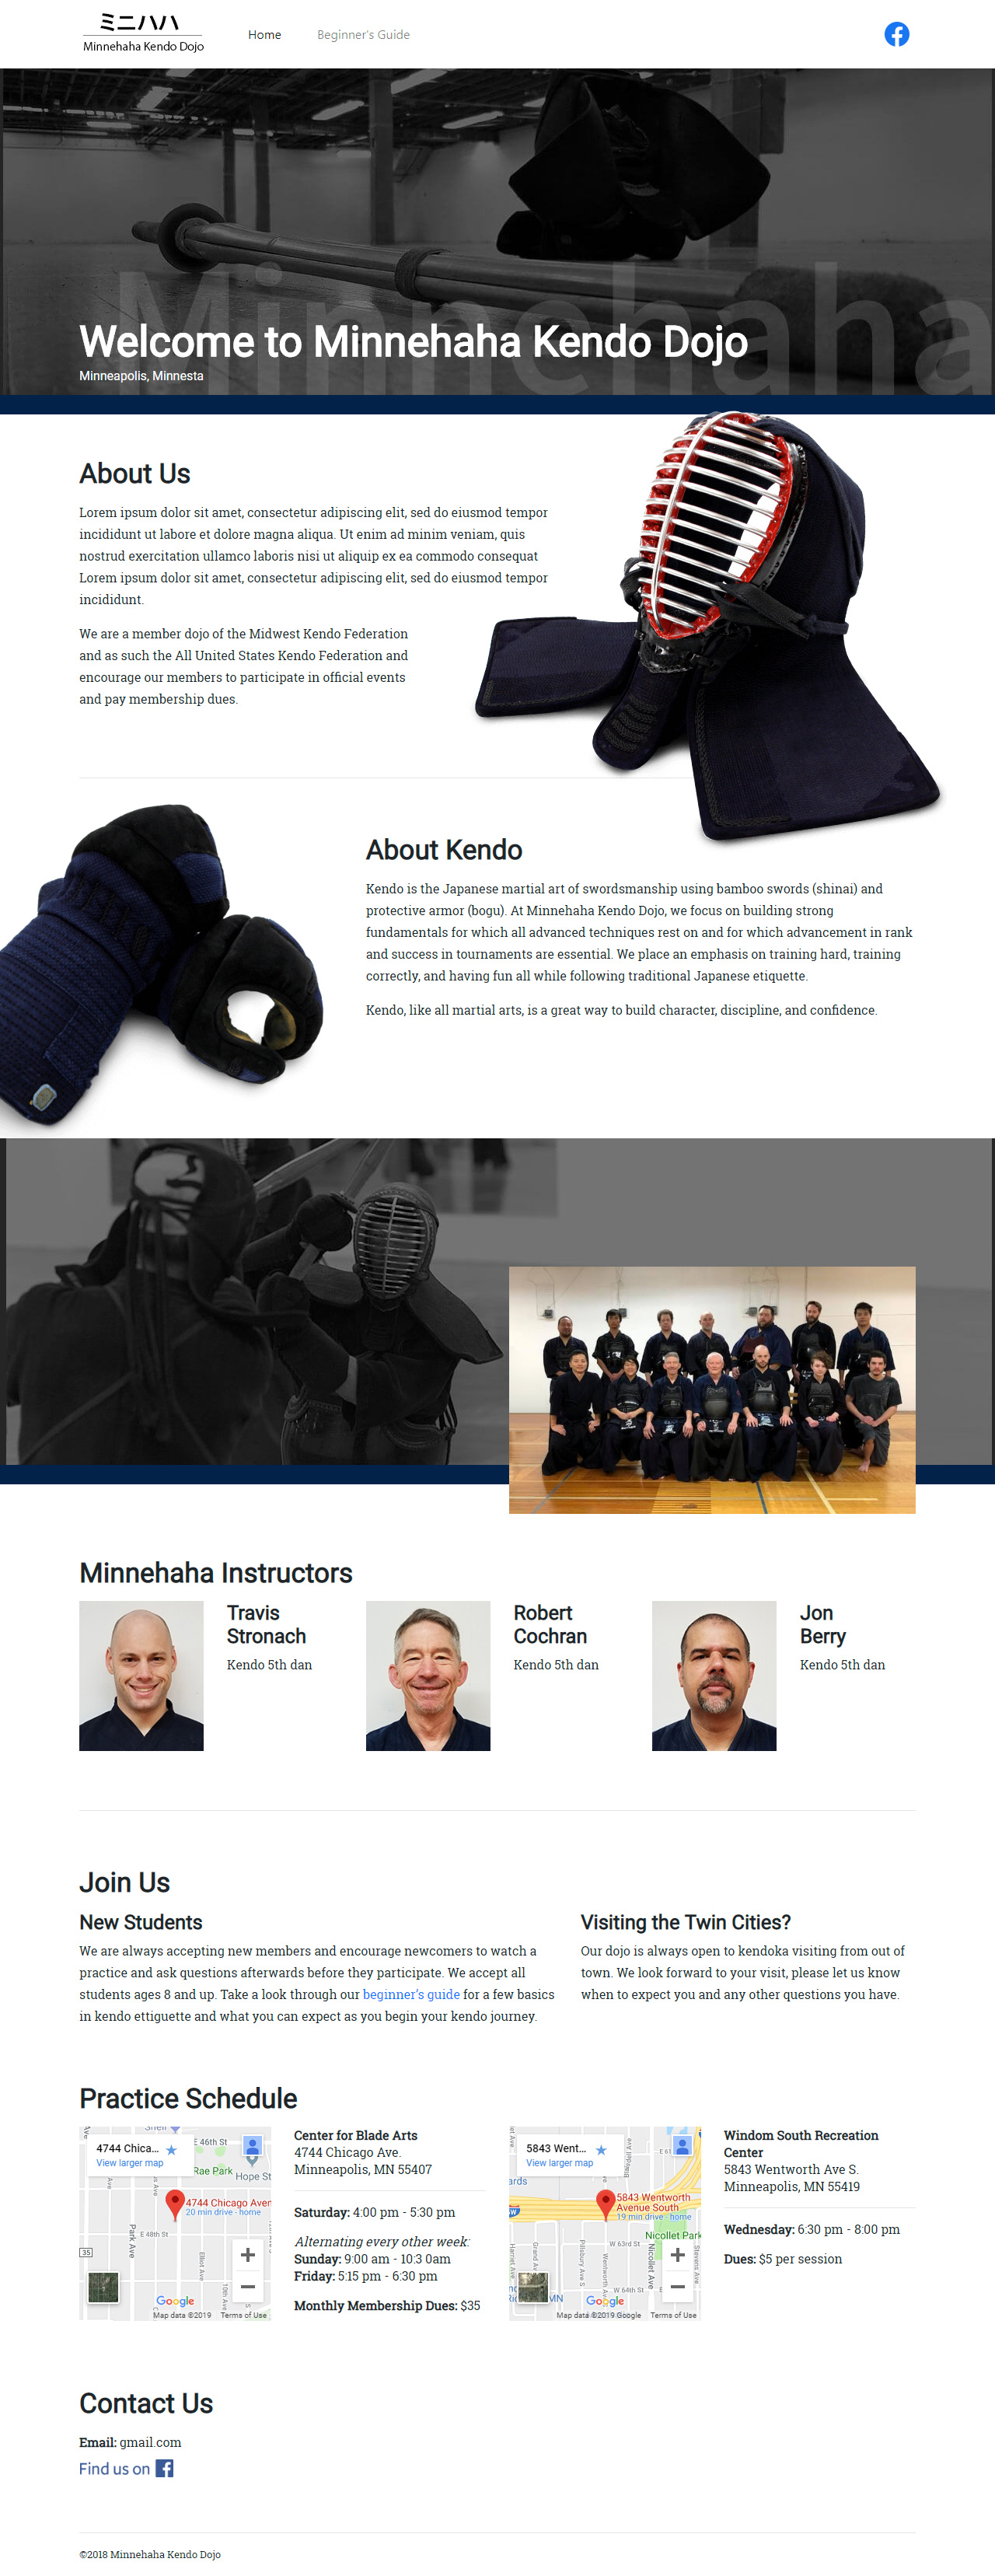 Web page layout